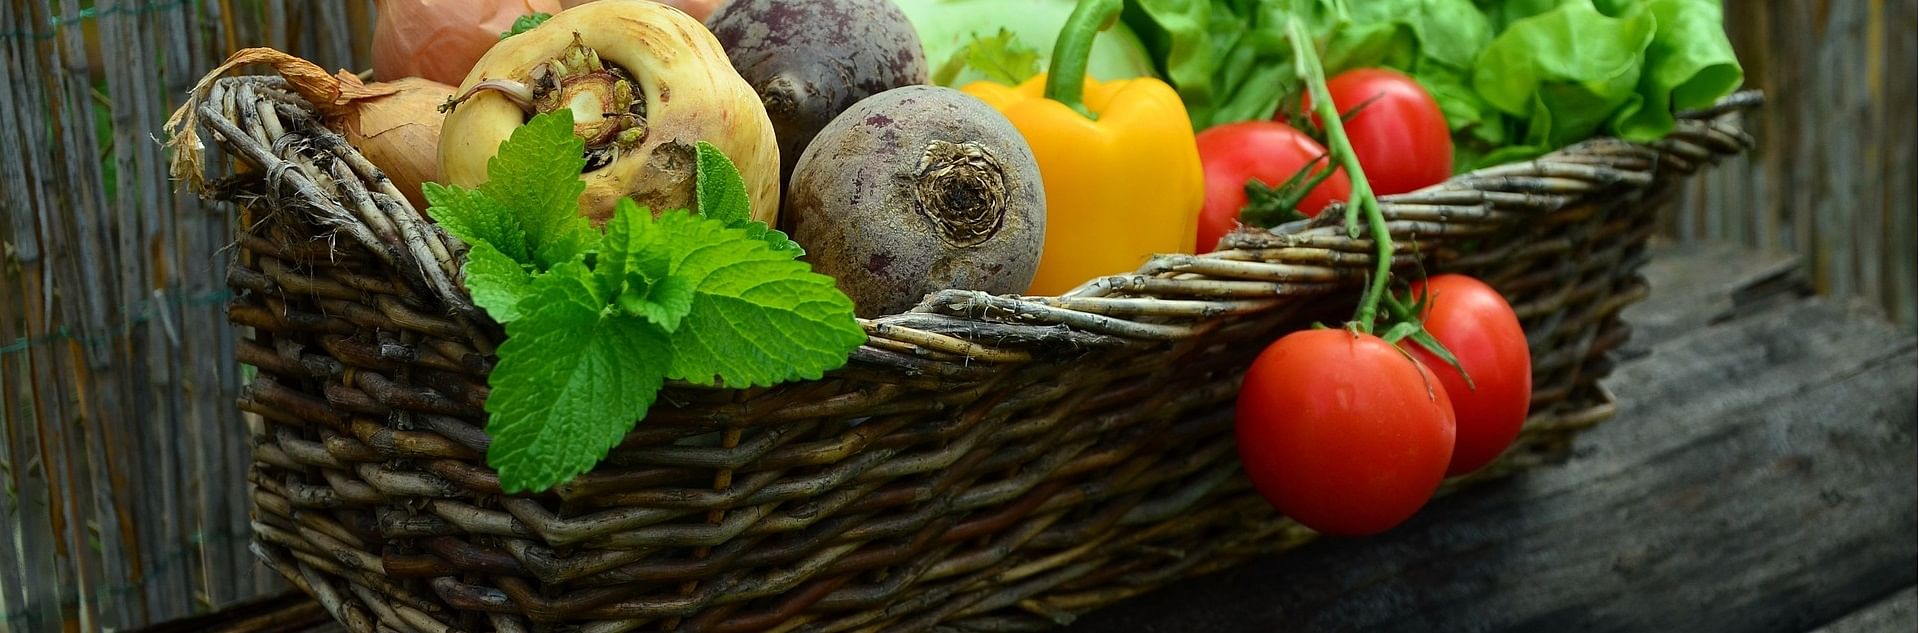 ירקות מהחקלאי לצרכן